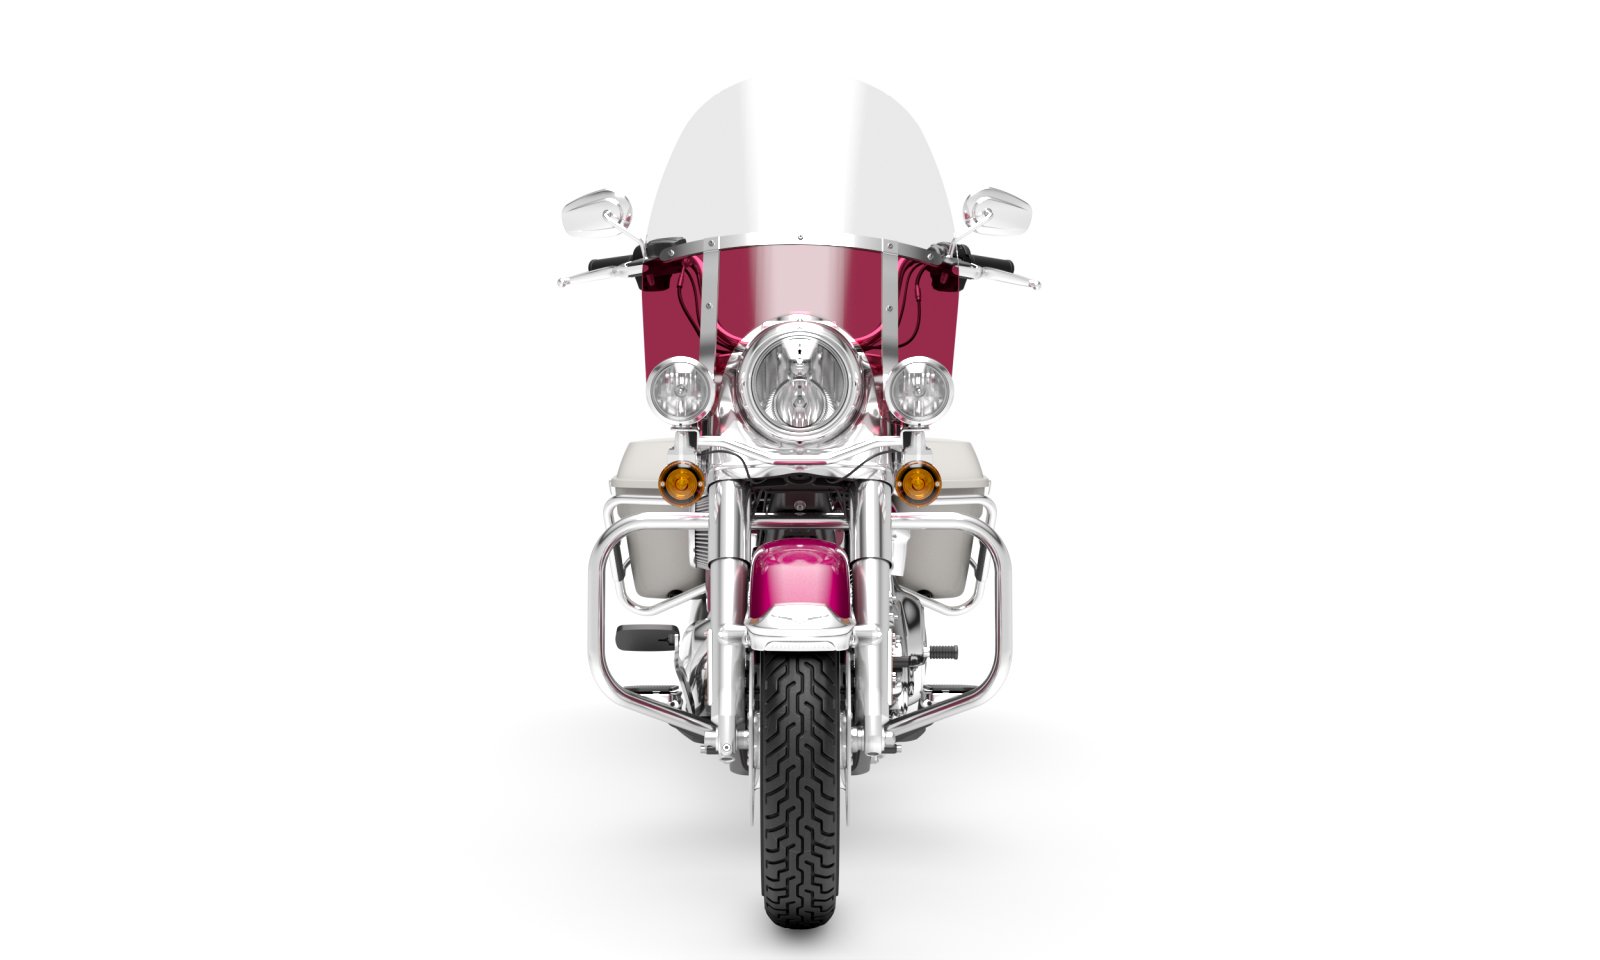 Kaufe 3D-Motorrad-Aufkleber, Amerika, USA, die historischen Route 66- Aufkleber, passend für Harley Touring, Electra Glide Ultra Road King